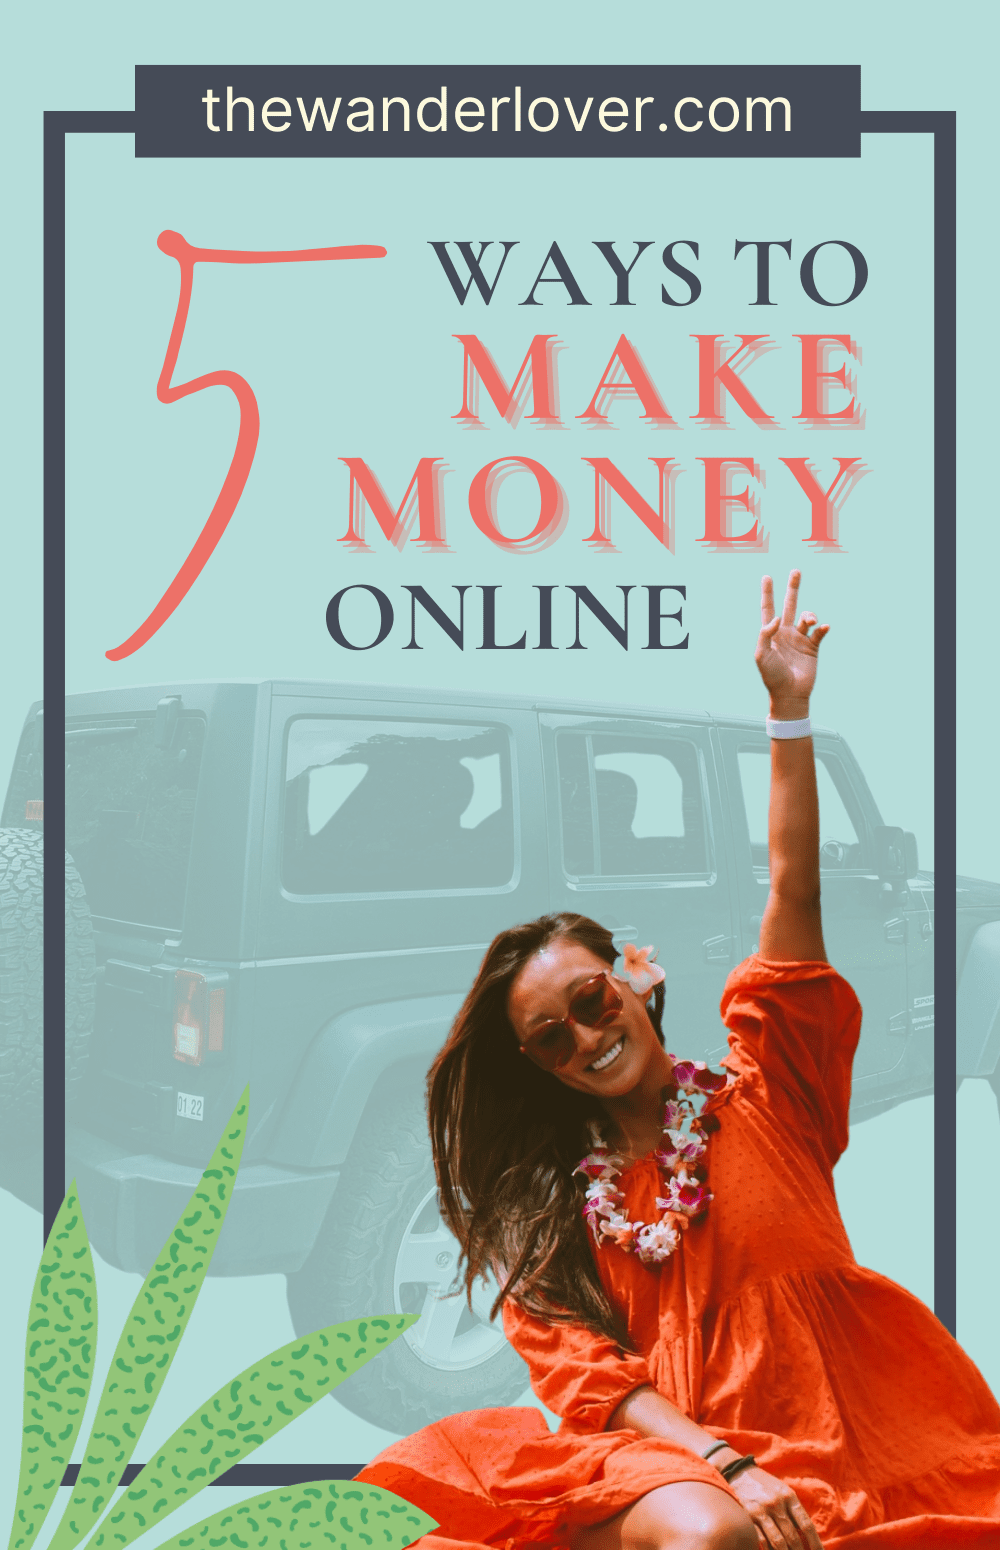 5 Ways to Make Money Online in 2022